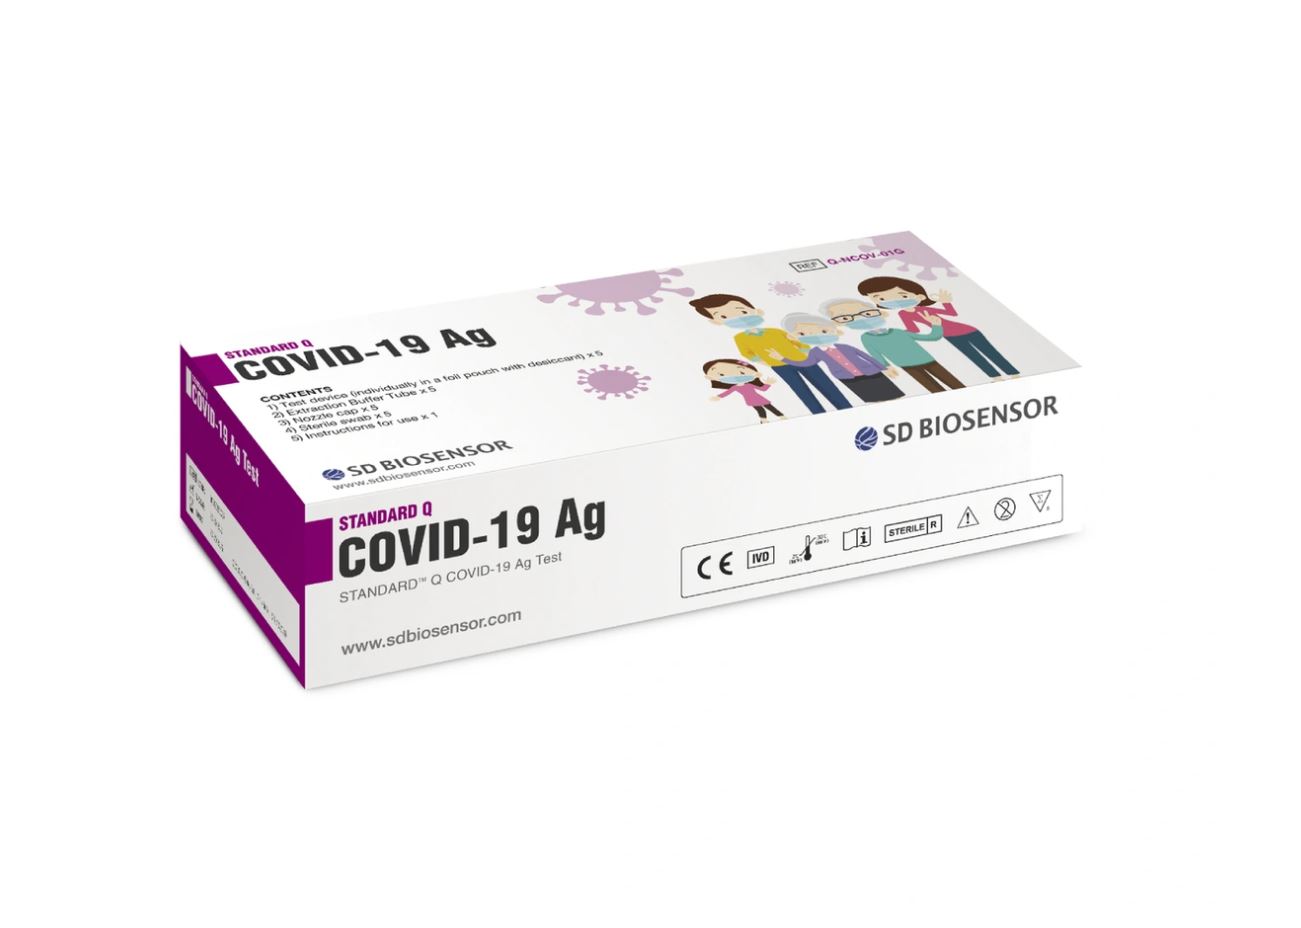 Купить Экспресс тест на антиген STANDARD Q COVID-19 AG (в индивидуальной упаковке на 5 человек), SD BIOSENSOR